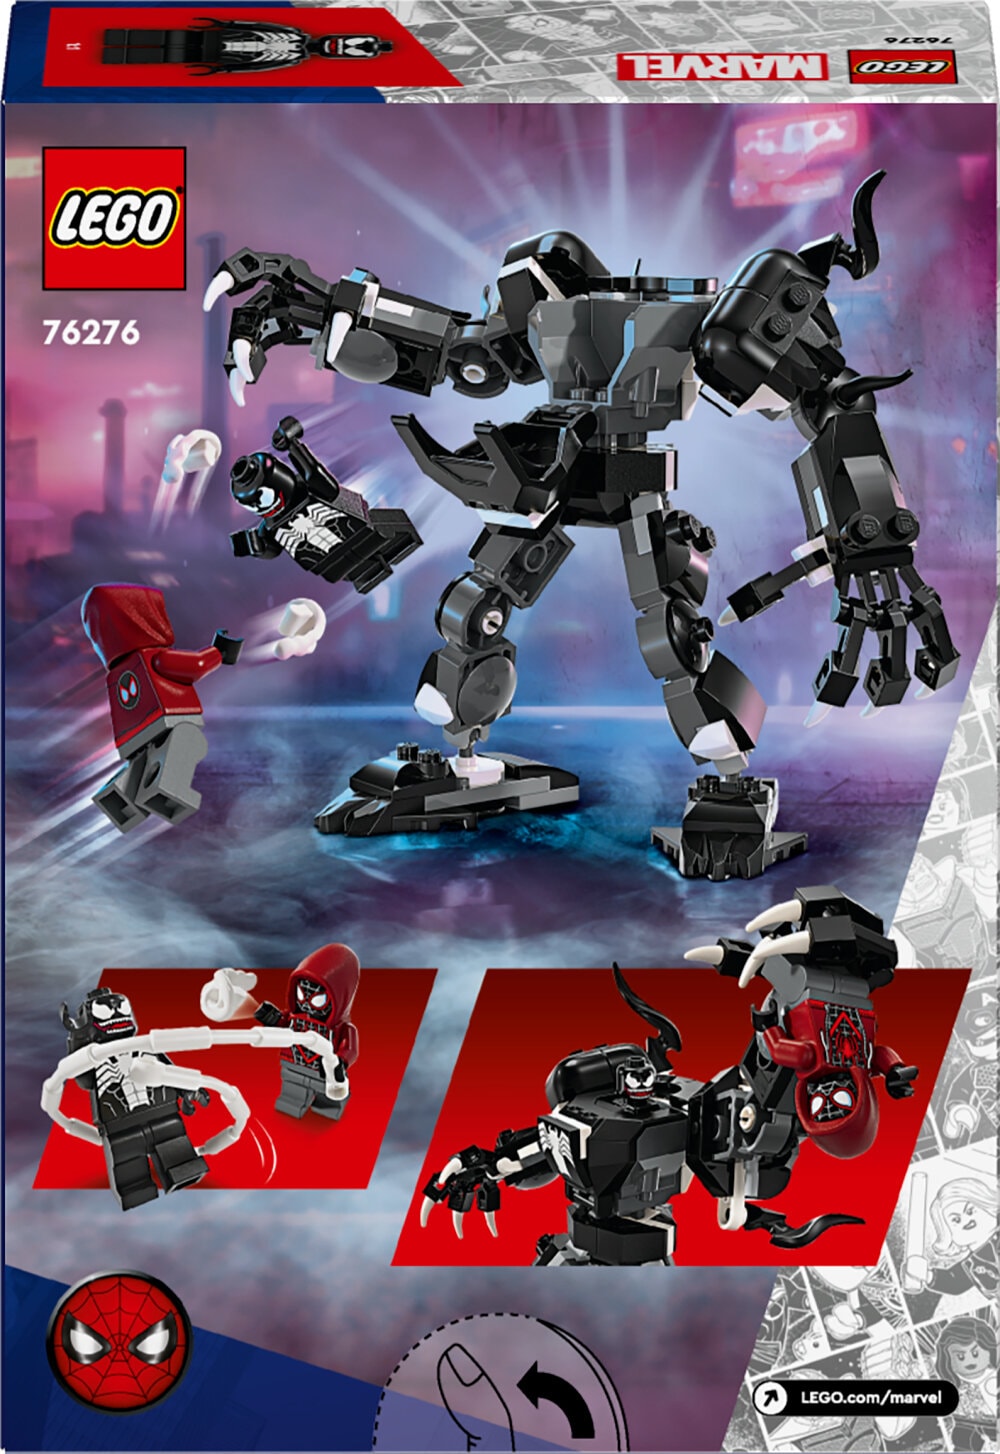 LEGO Marvel - Venom Mech vs. Miles Morales 6+